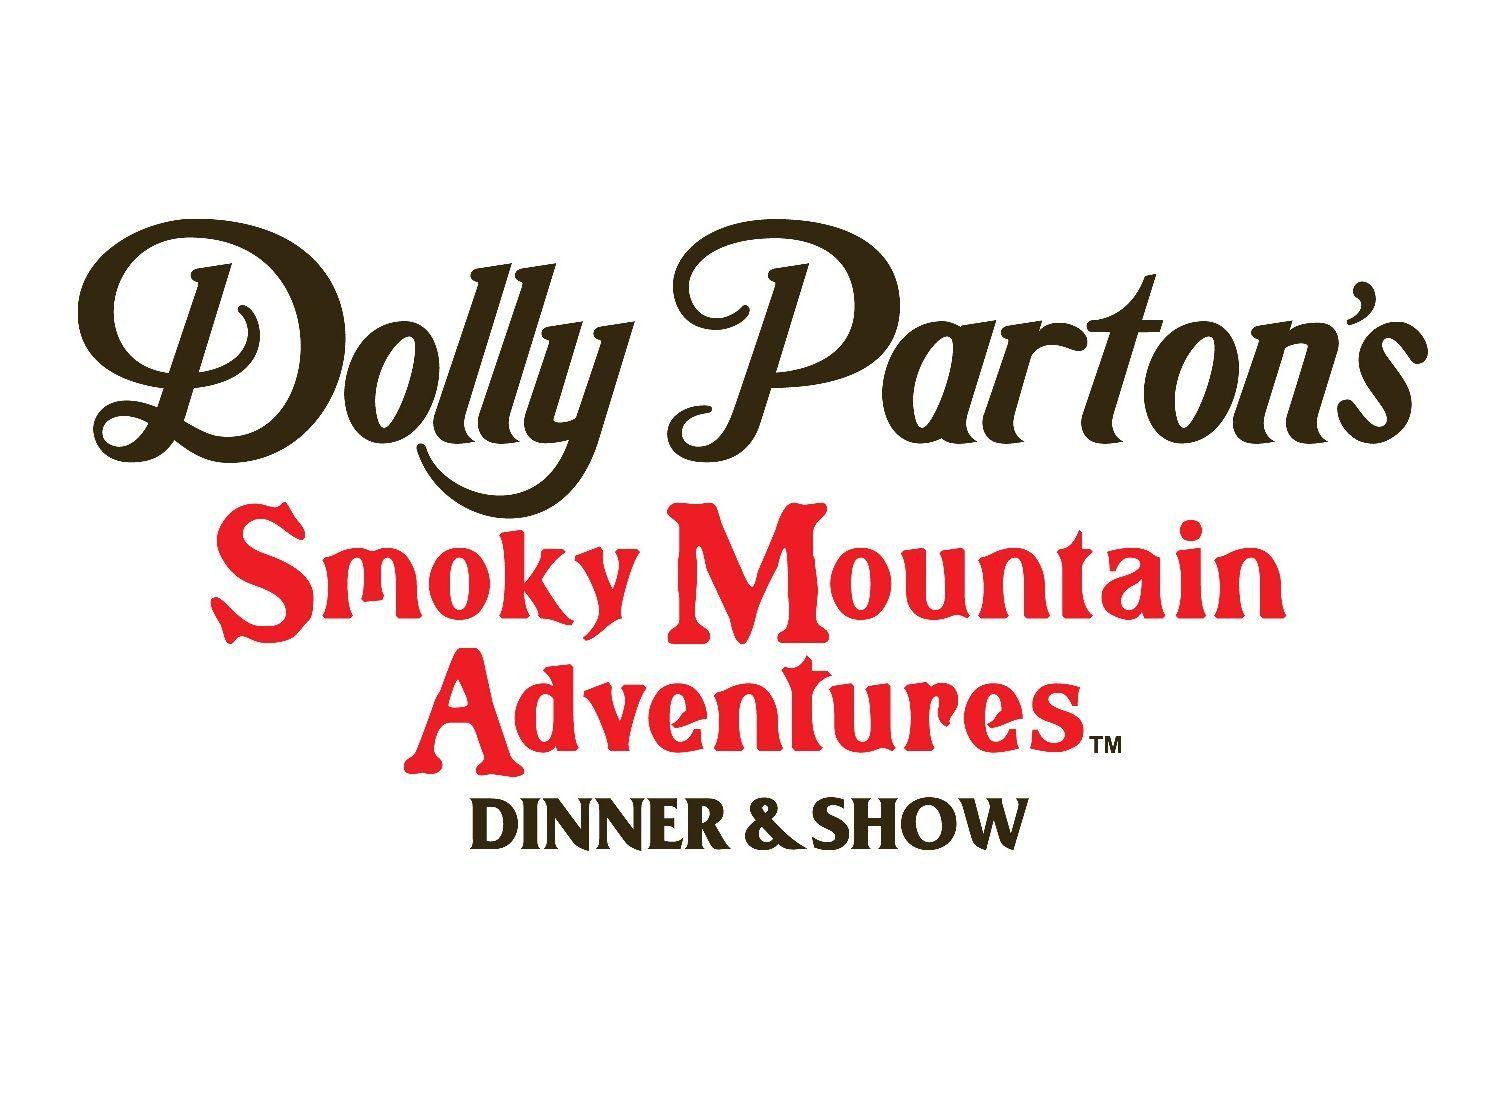 Dolly Parton Logo - Dolly Parton's Smoky Mountain Adventures opens for season 36 News